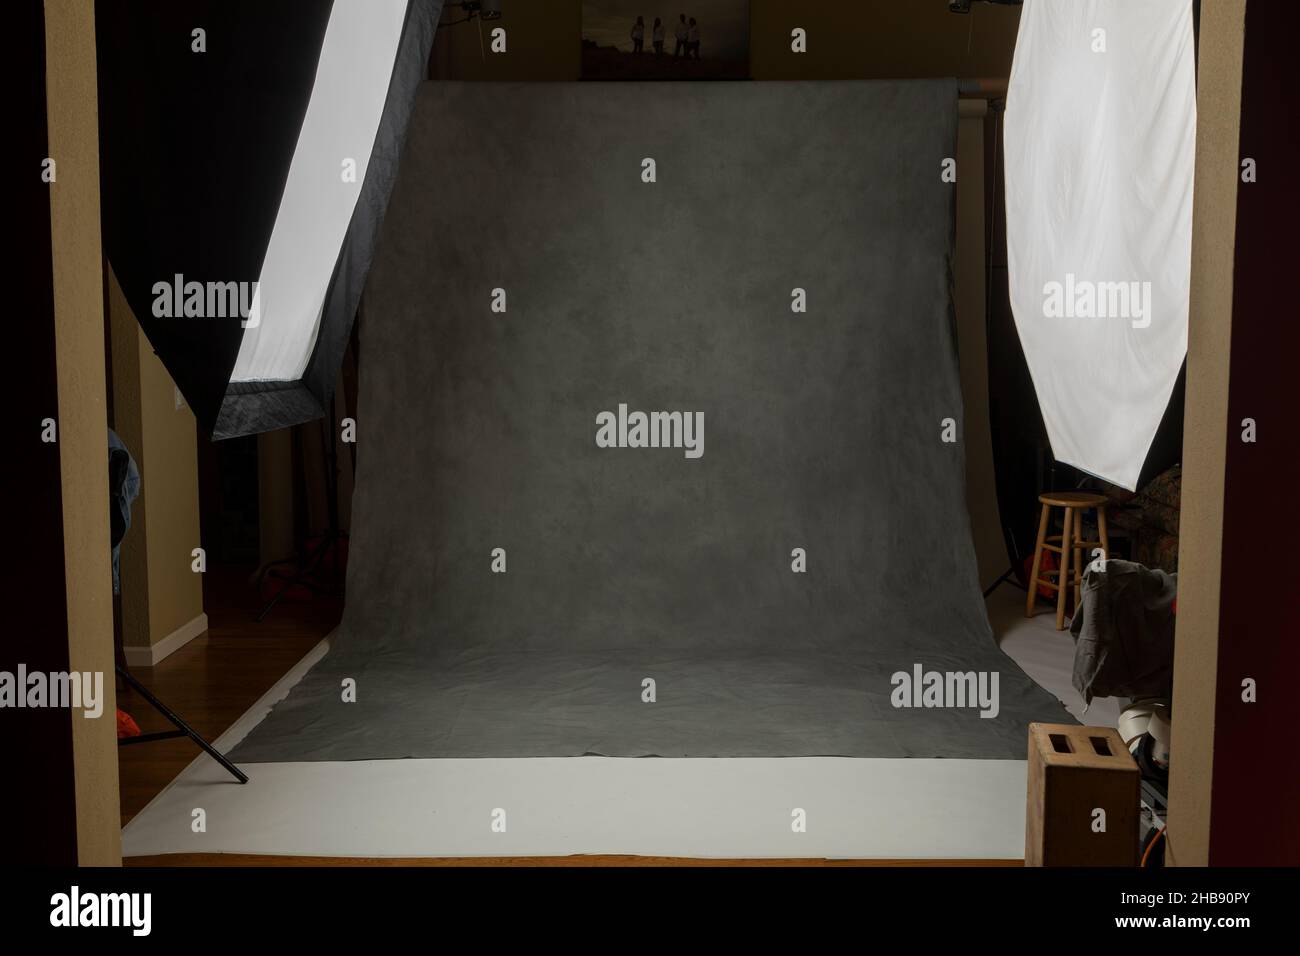 Fotostudio-Set mit Leuchtkästen und lackiertem Musselin-Hintergrund Stockfoto